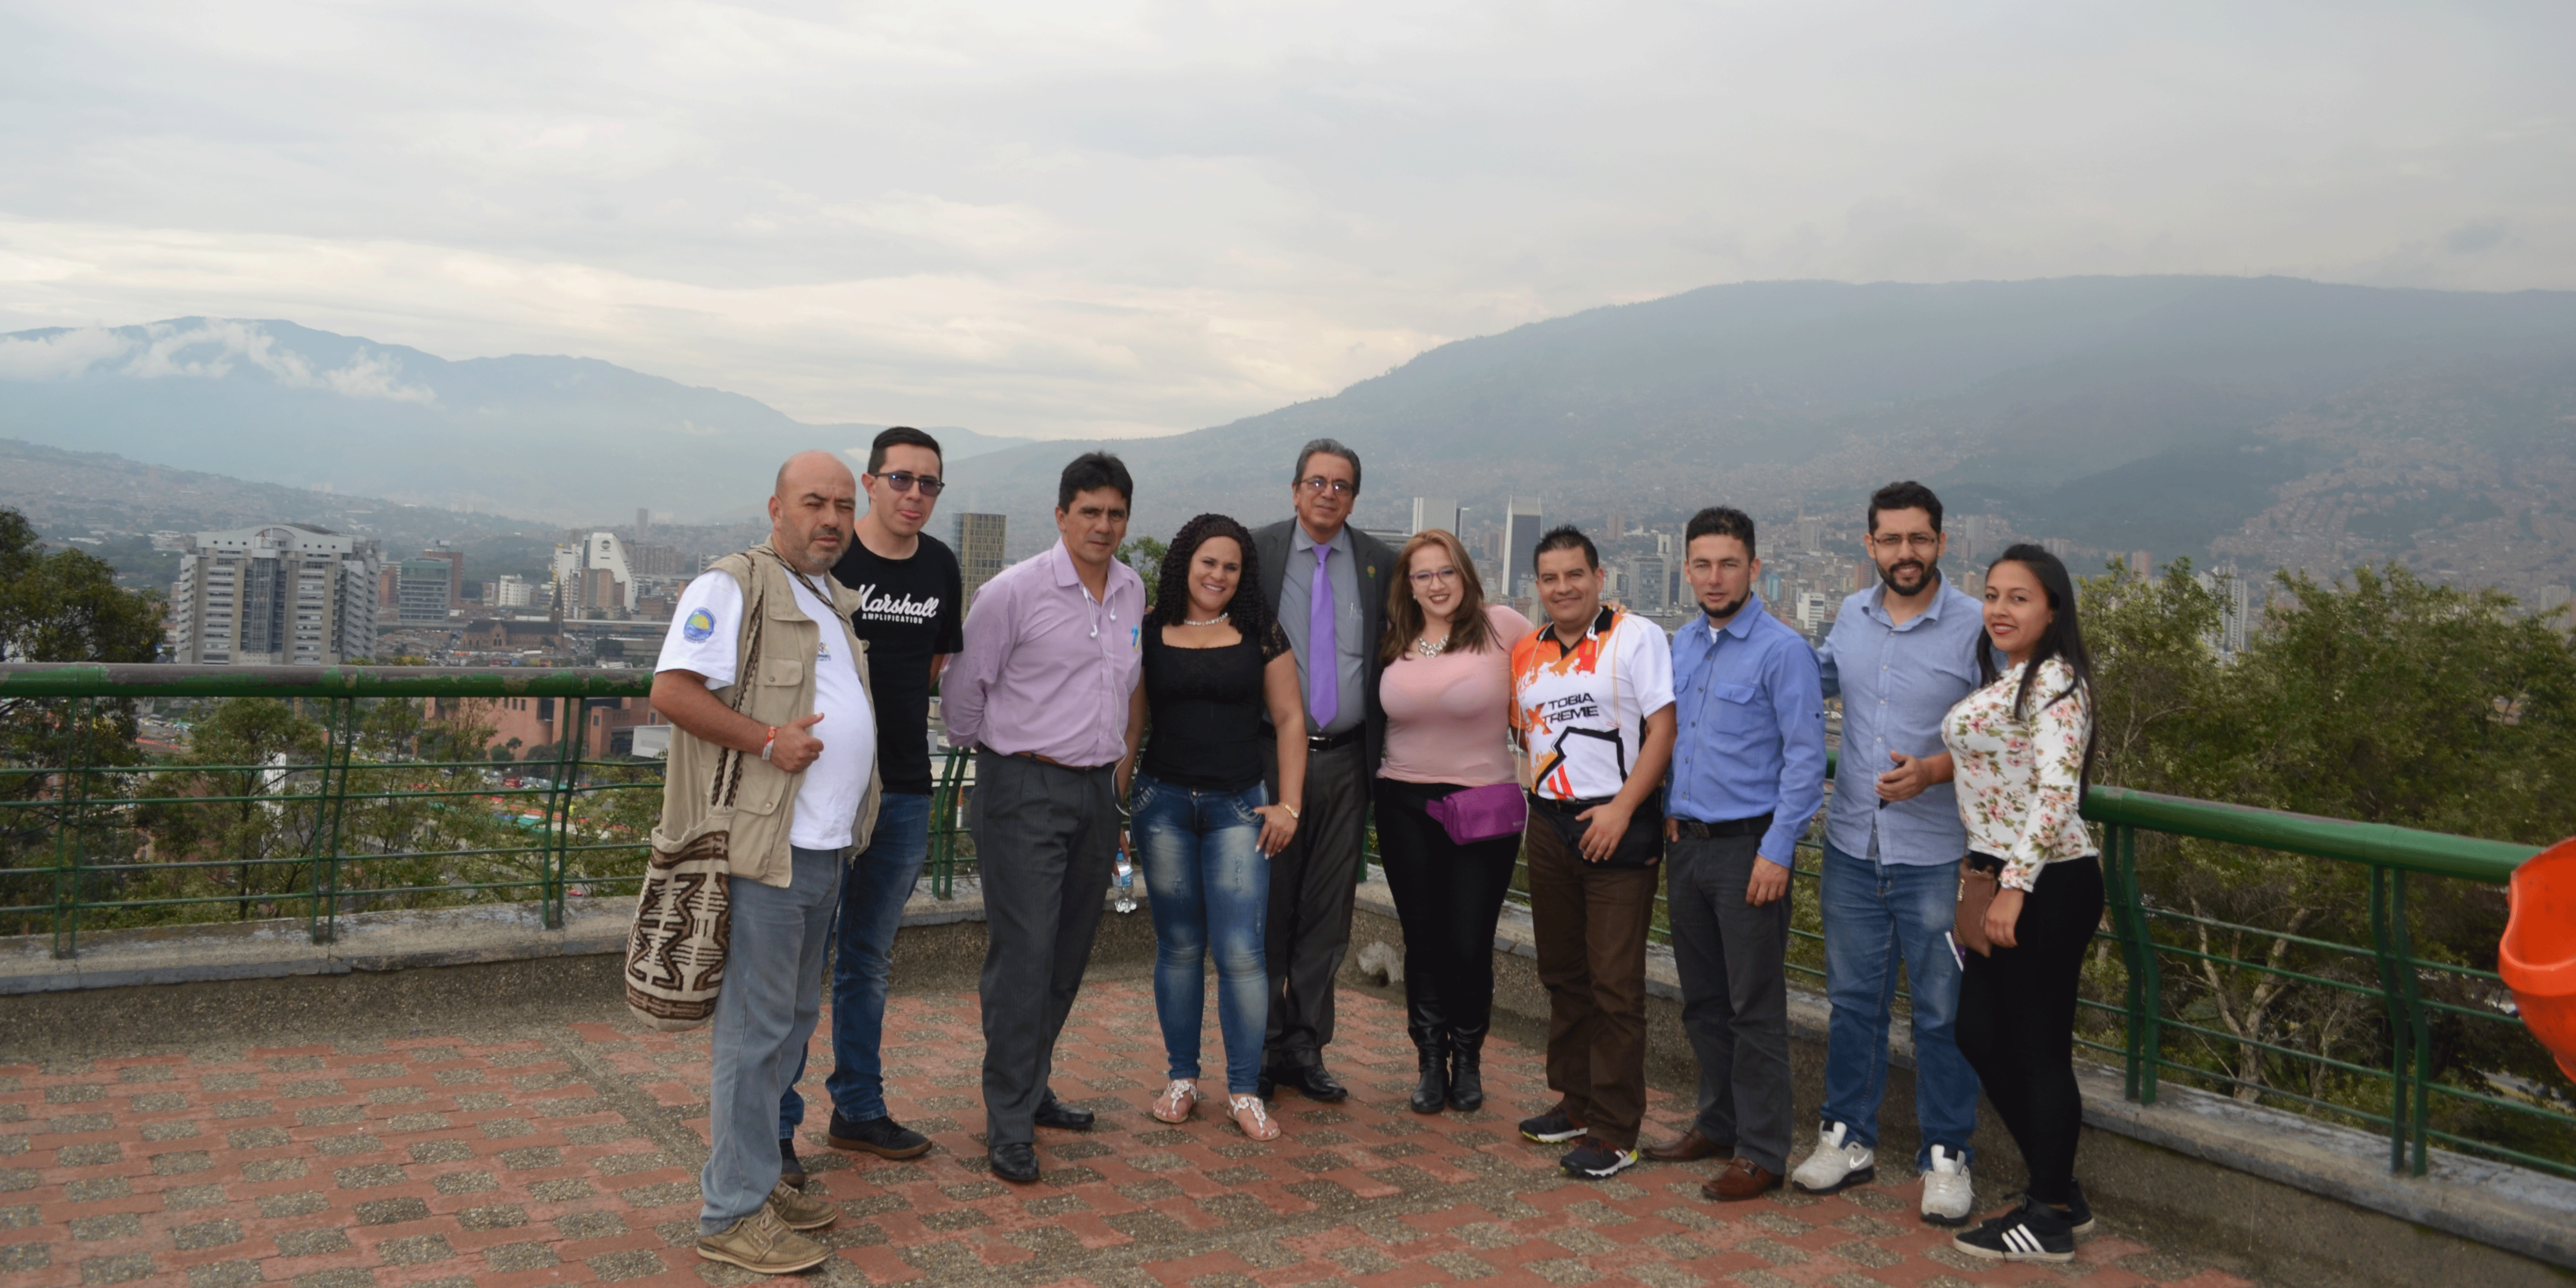 Promotores turísticos de Cundinamarca visitan lugares icónicos de Medellín


















































